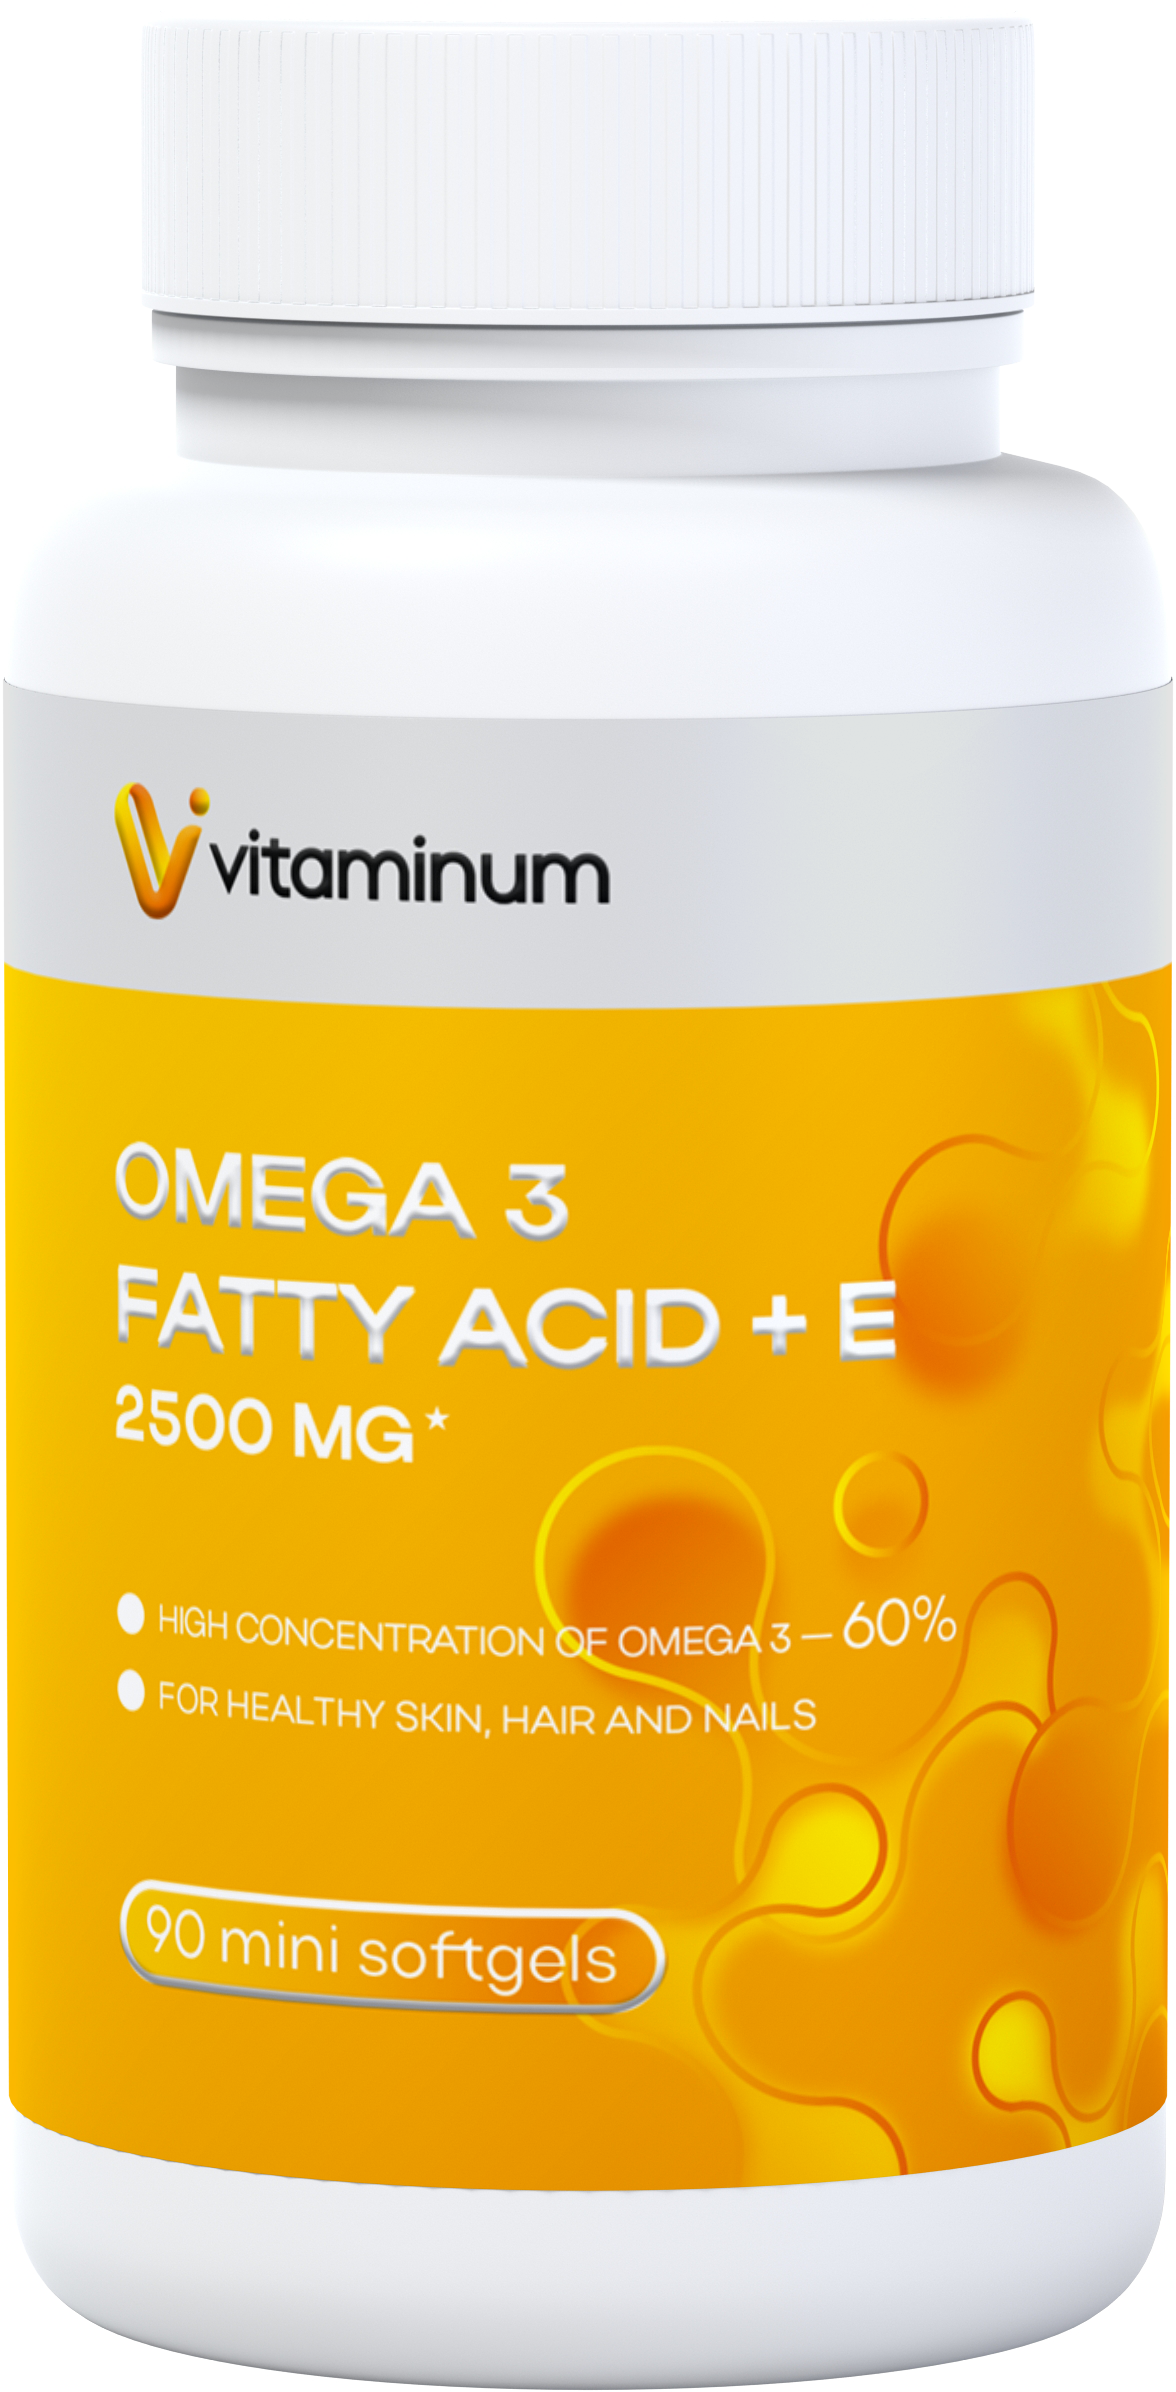  Vitaminum ОМЕГА 3 60% + витамин Е (2500 MG*) 90 капсул 700 мг   в Глазове